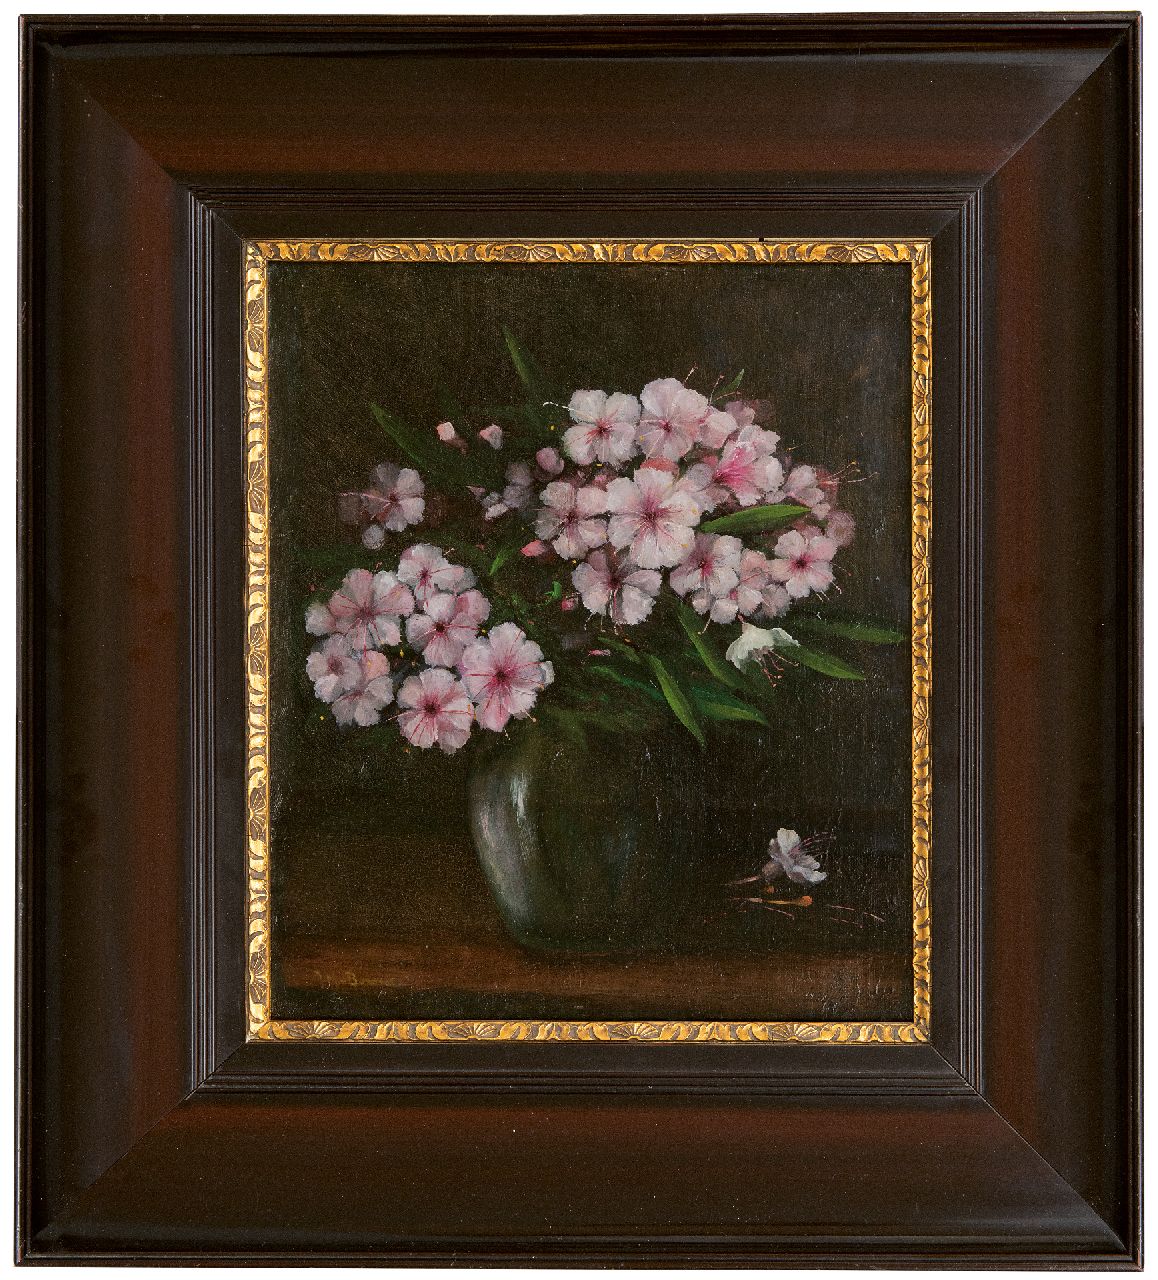 Bommel J.M. van | Jacobus Marinus van Bommel | Schilderijen te koop aangeboden | Rhododendrontakken in een vaas, olieverf op doek 38,2 x 33,3 cm, gesigneerd linksonder en op spieraam gedateerd 1932